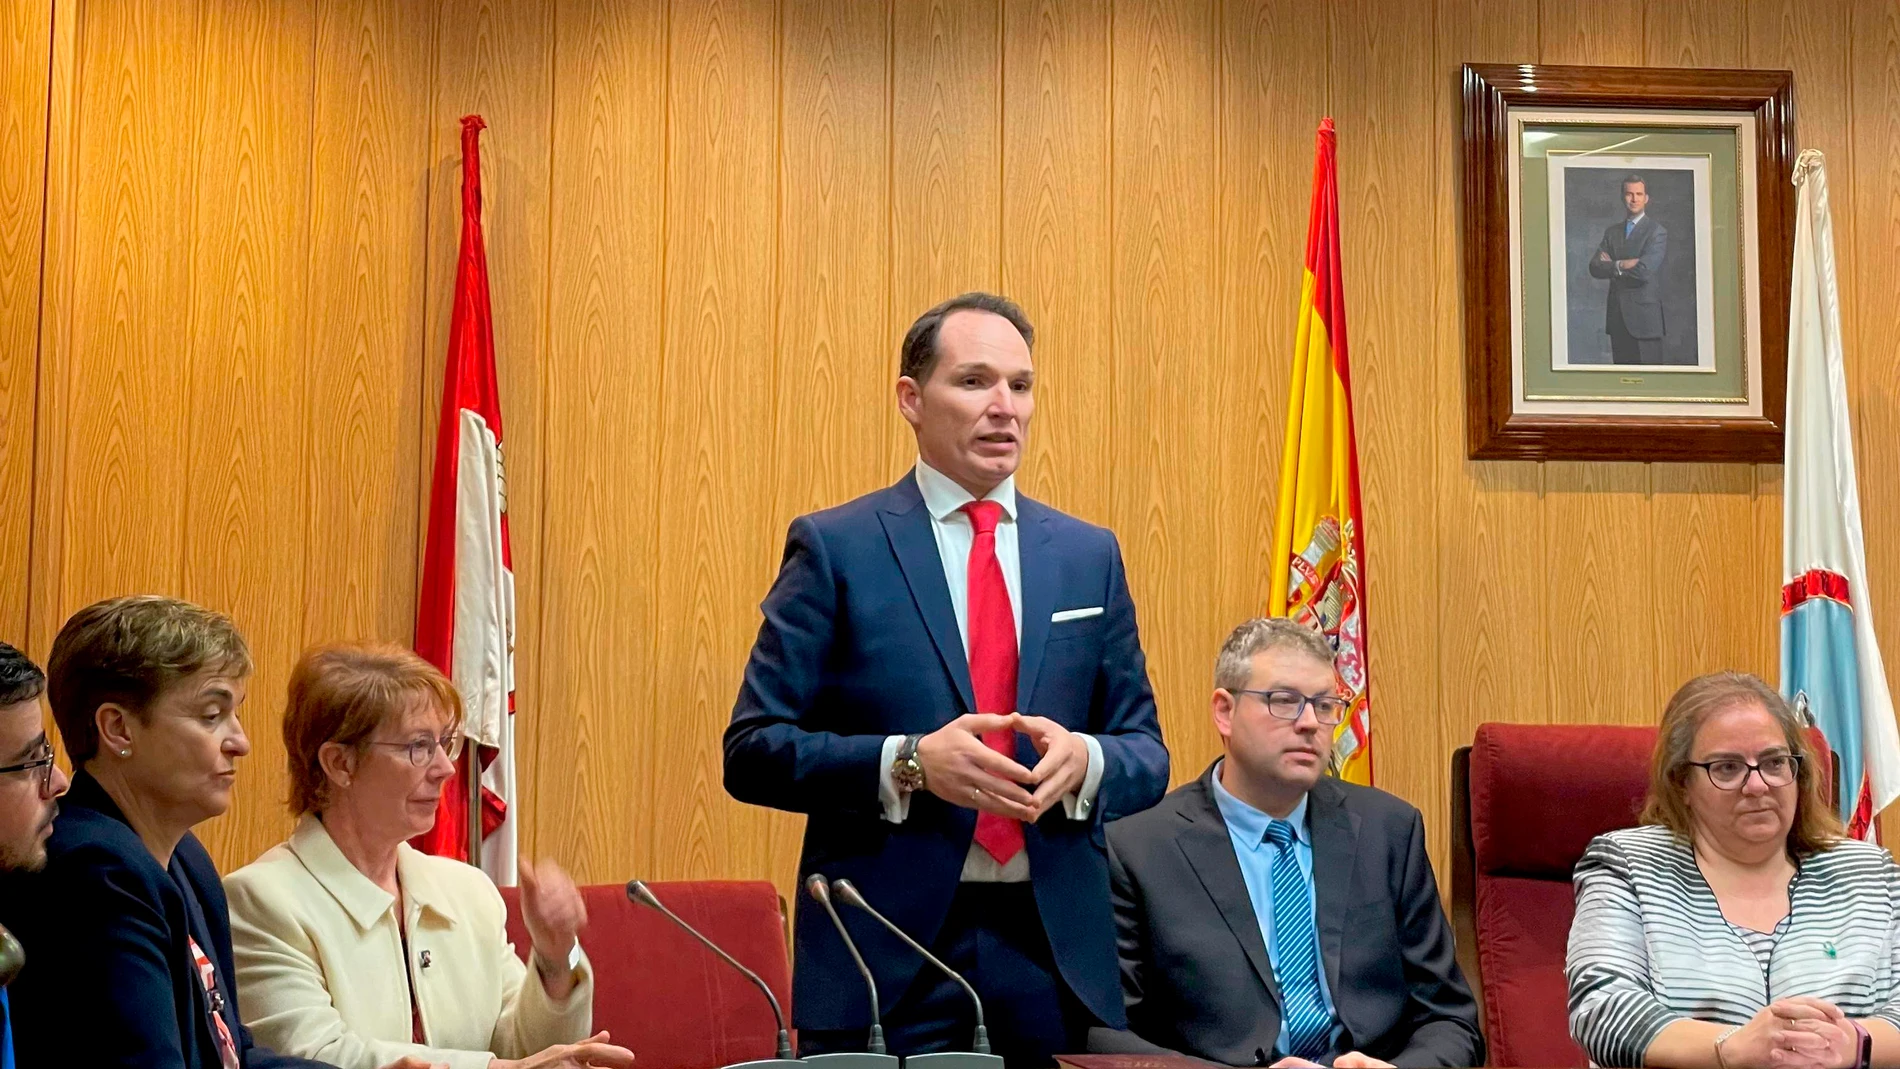 Daniel García toma posesión del cargo de alcalde de San Esteban de Gormaz (Soria)